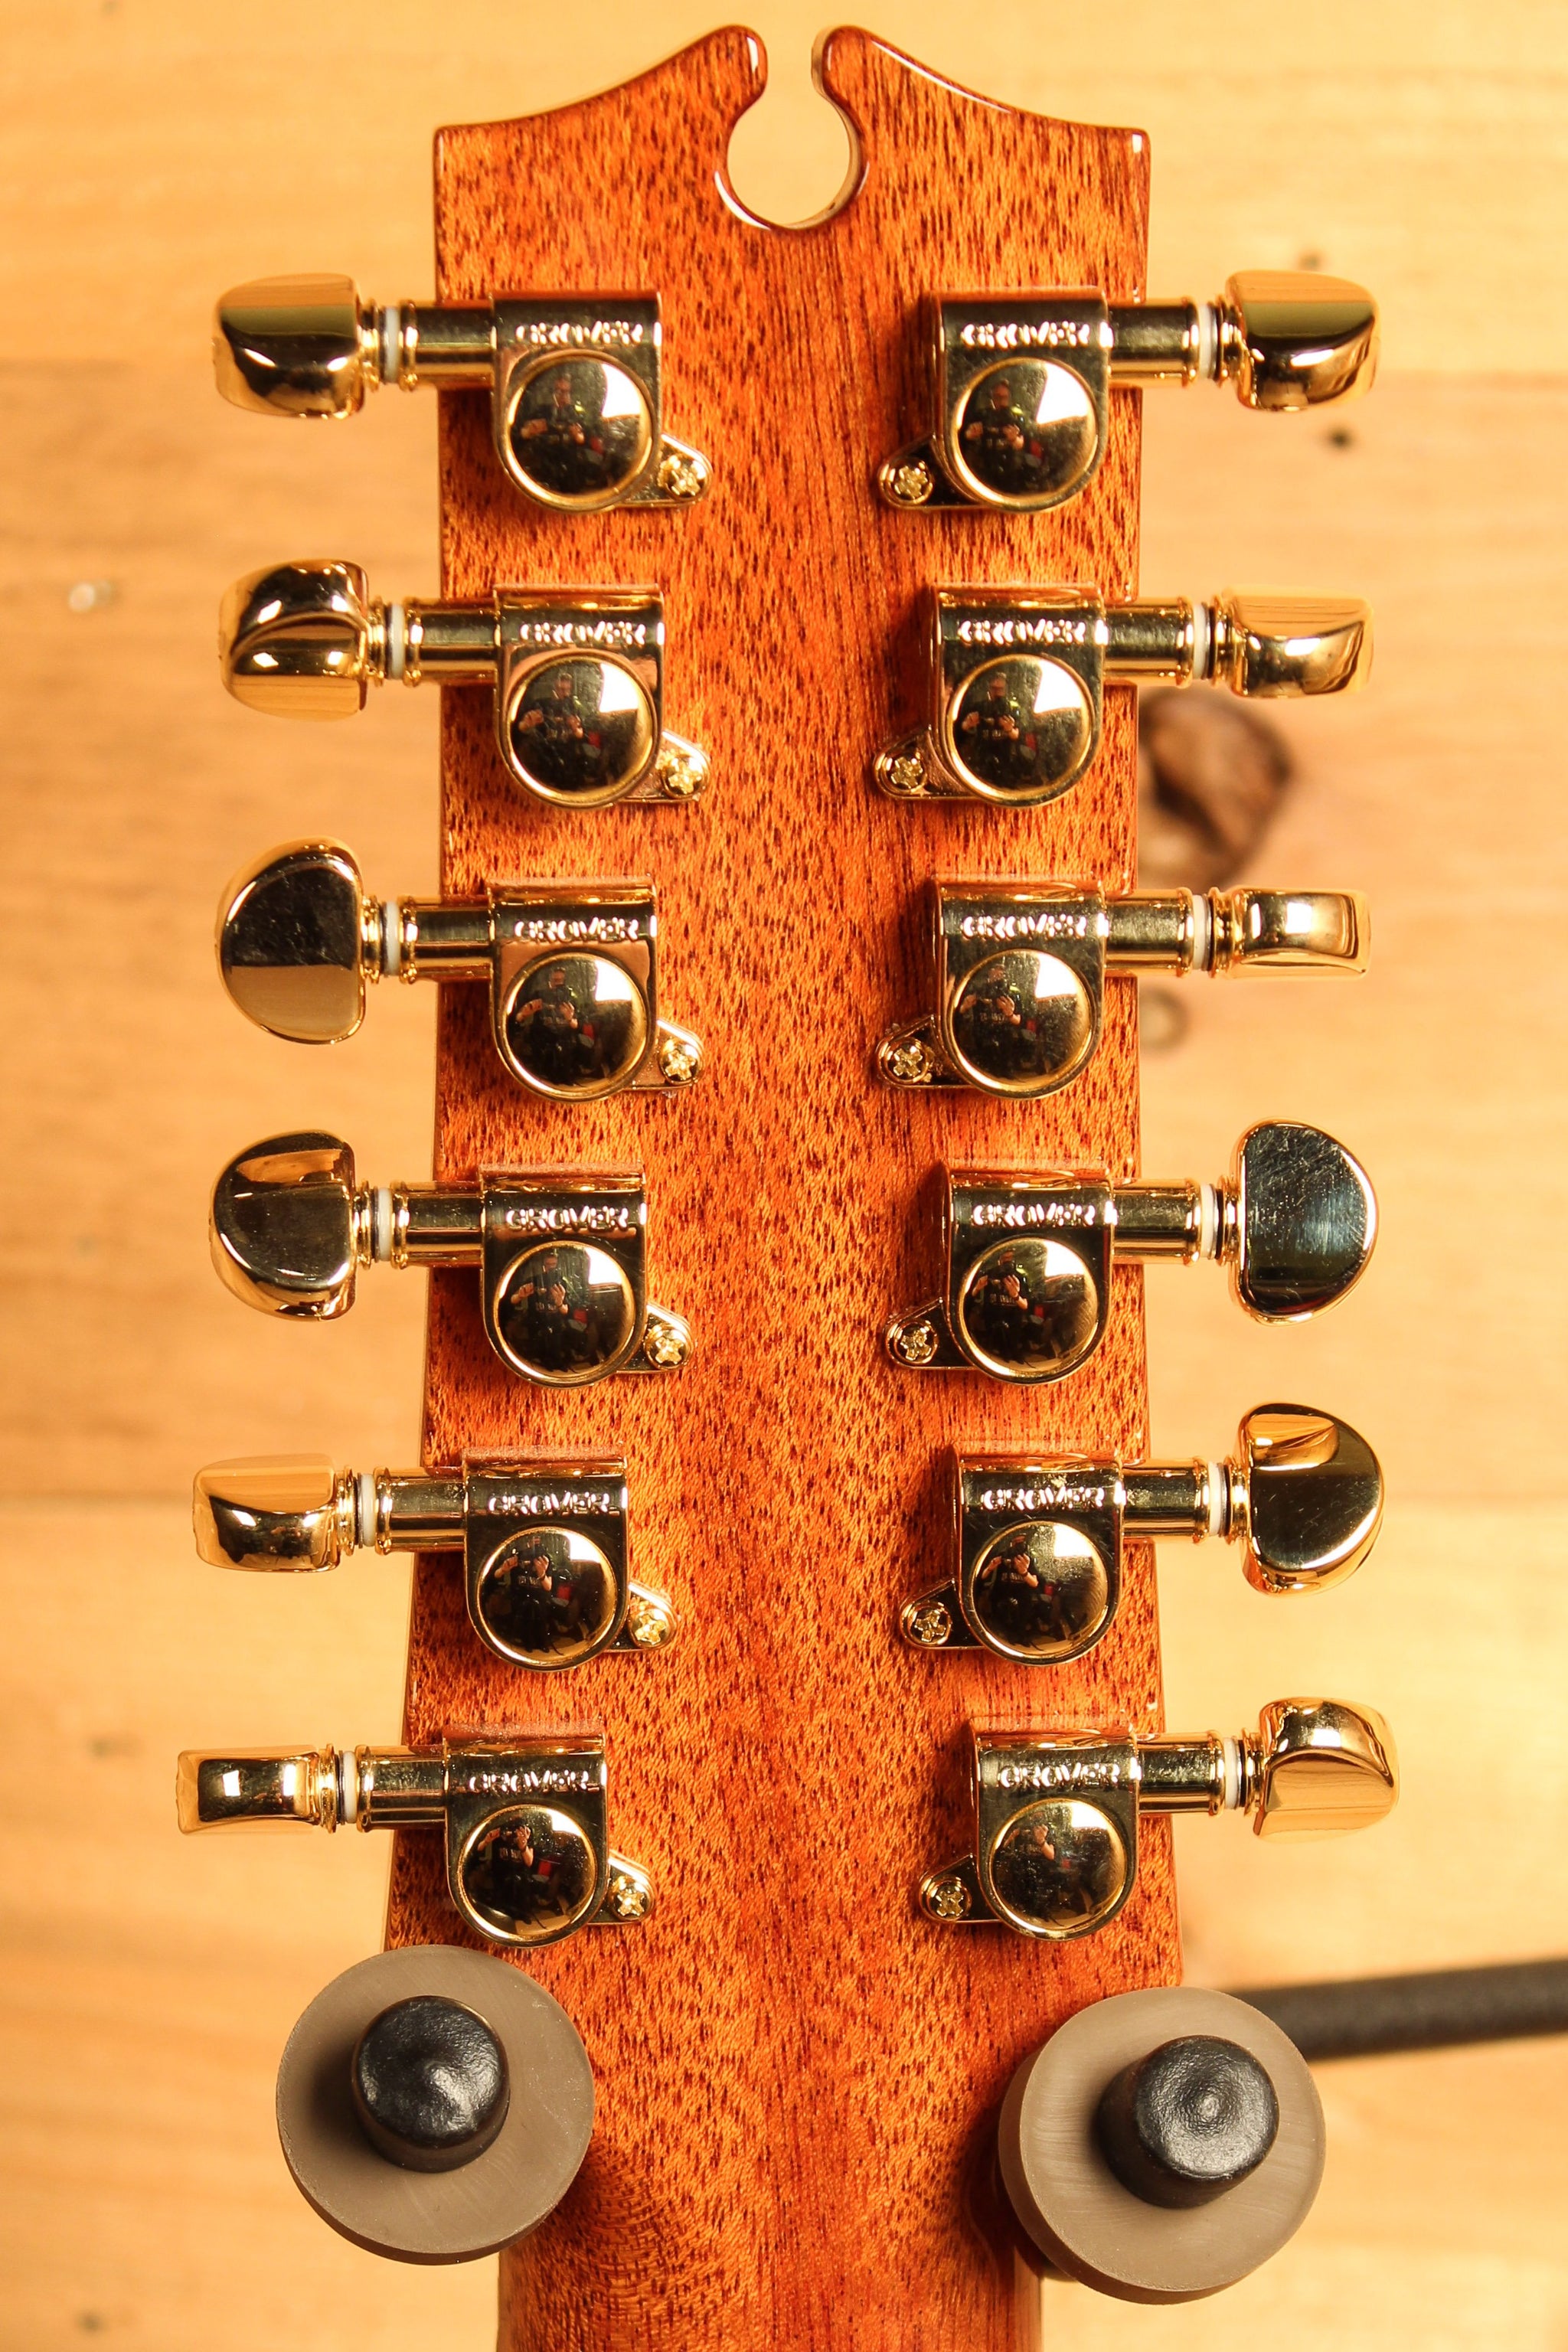 Maton EM100C 12-String Messiah Custom w/ Sitka Spruce & Indian Rosewood ID-13476 - Artisan Guitars